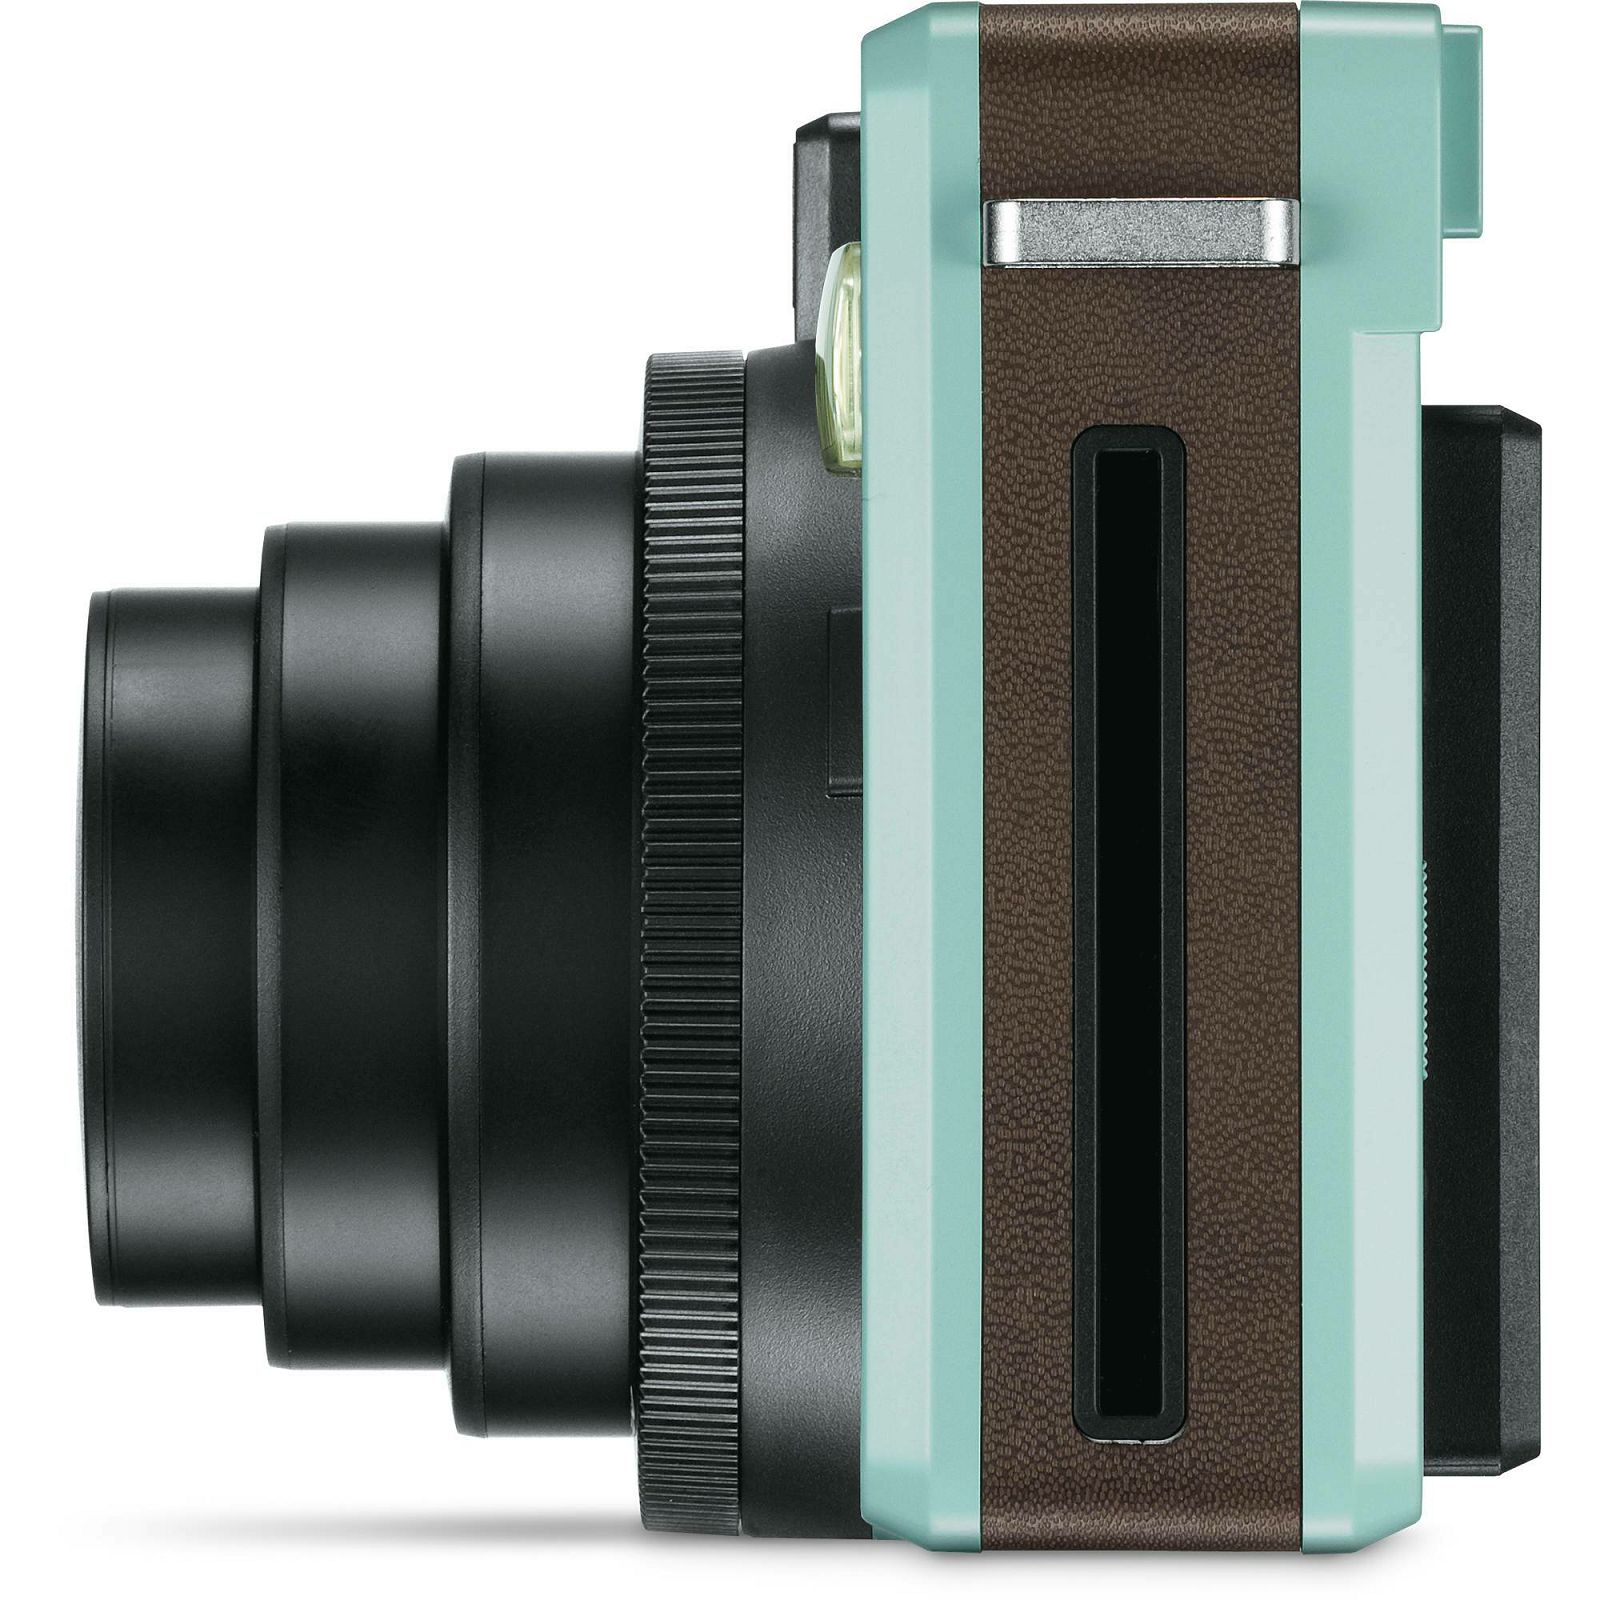 Leica Sofort Mint Instant Film Camera fotoaparat s trenutnum ispisom fotografije (19101)